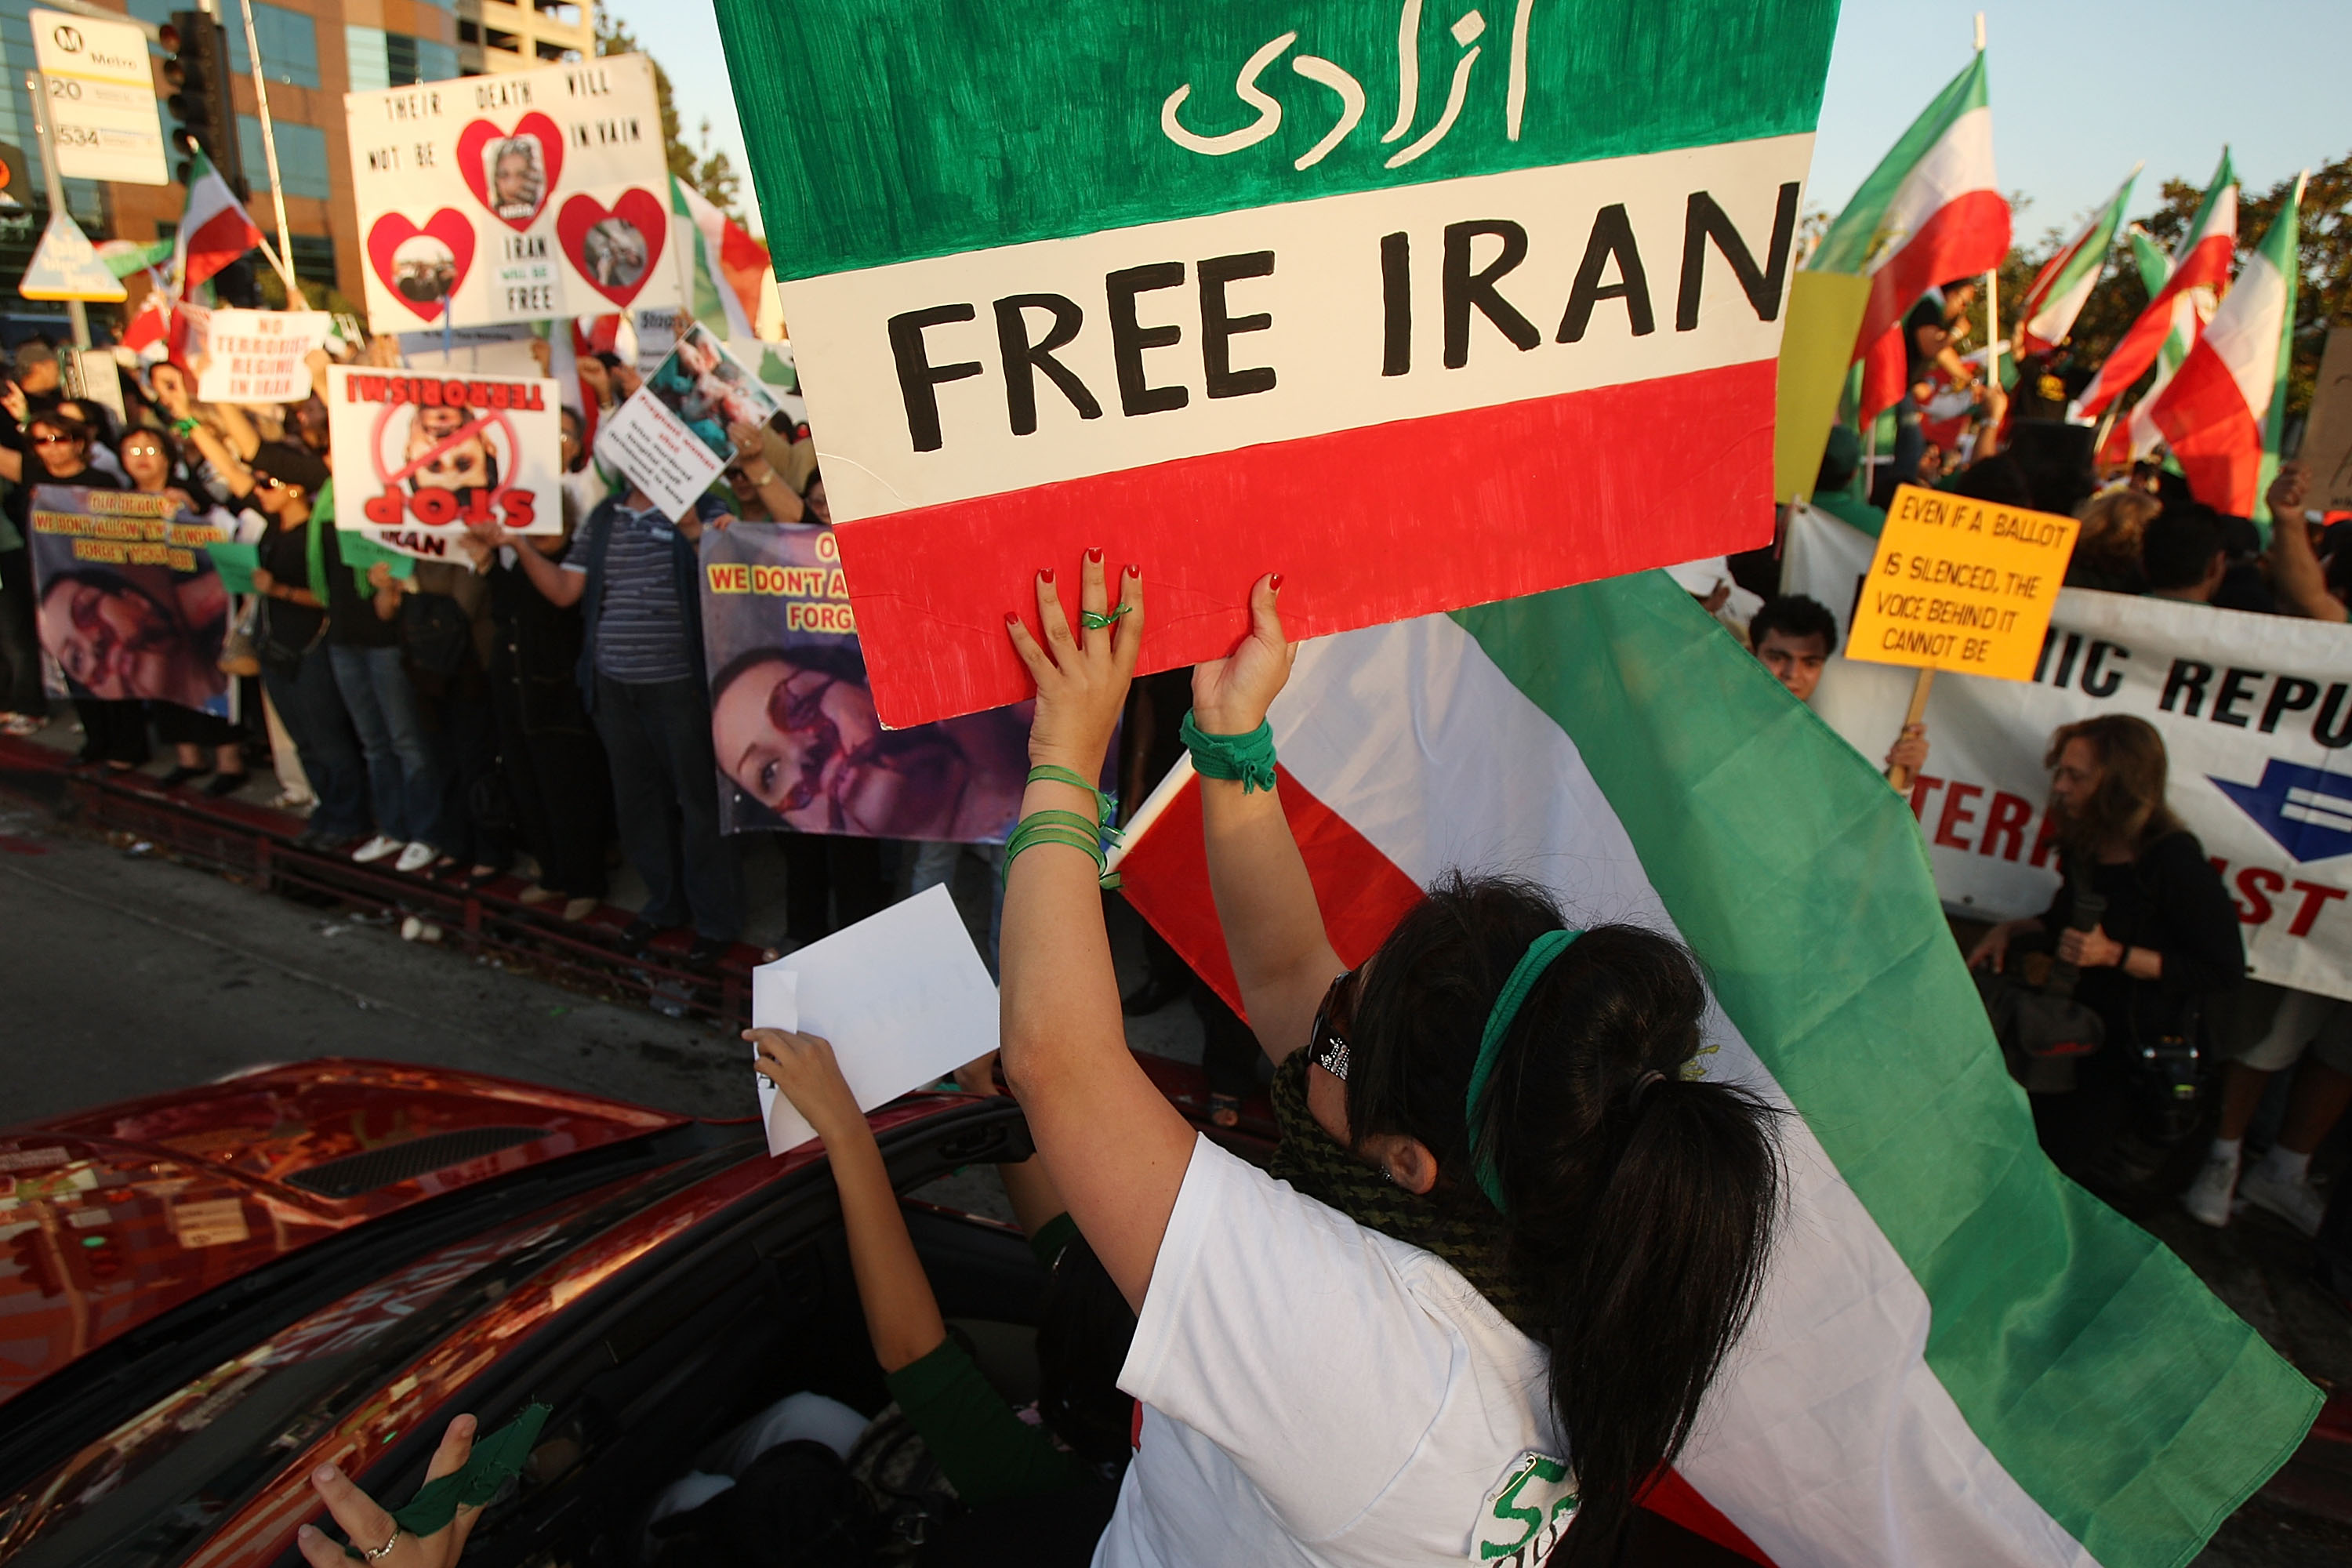 伊朗总统大选引发争议，反对派百万人走上街头的游行抗议。有人从示威者手腕上的绿色标志，以及伊朗的近代历史引申概括说，这是伊朗的「绿色革命」。